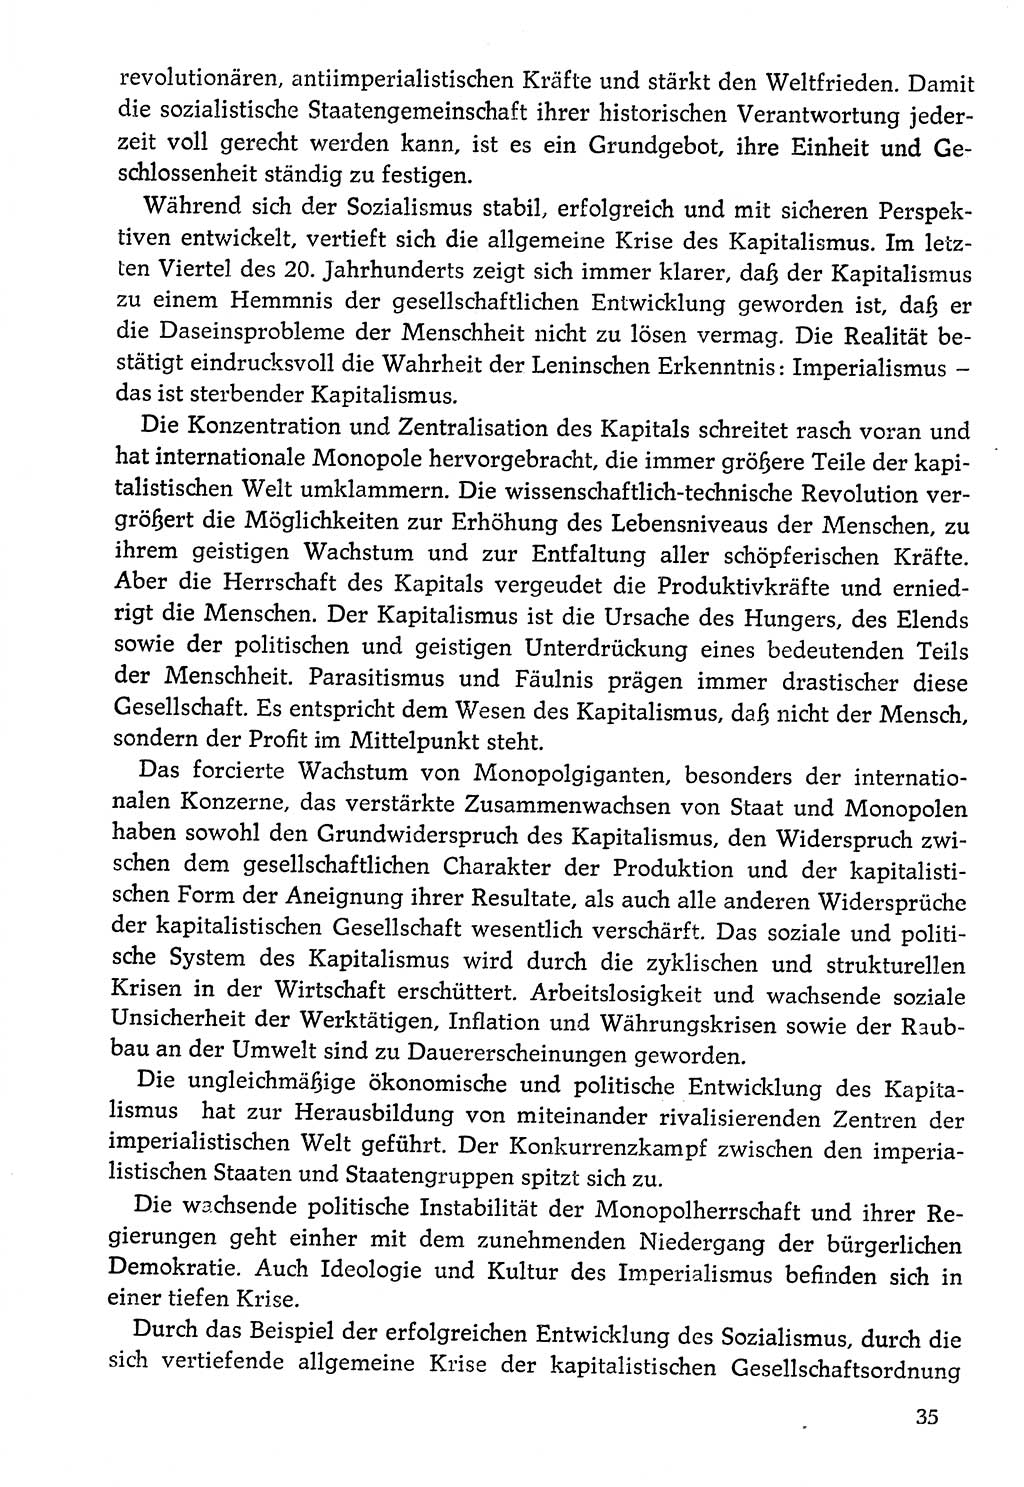 Dokumente der Sozialistischen Einheitspartei Deutschlands (SED) [Deutsche Demokratische Republik (DDR)] 1976-1977, Seite 35 (Dok. SED DDR 1976-1977, S. 35)